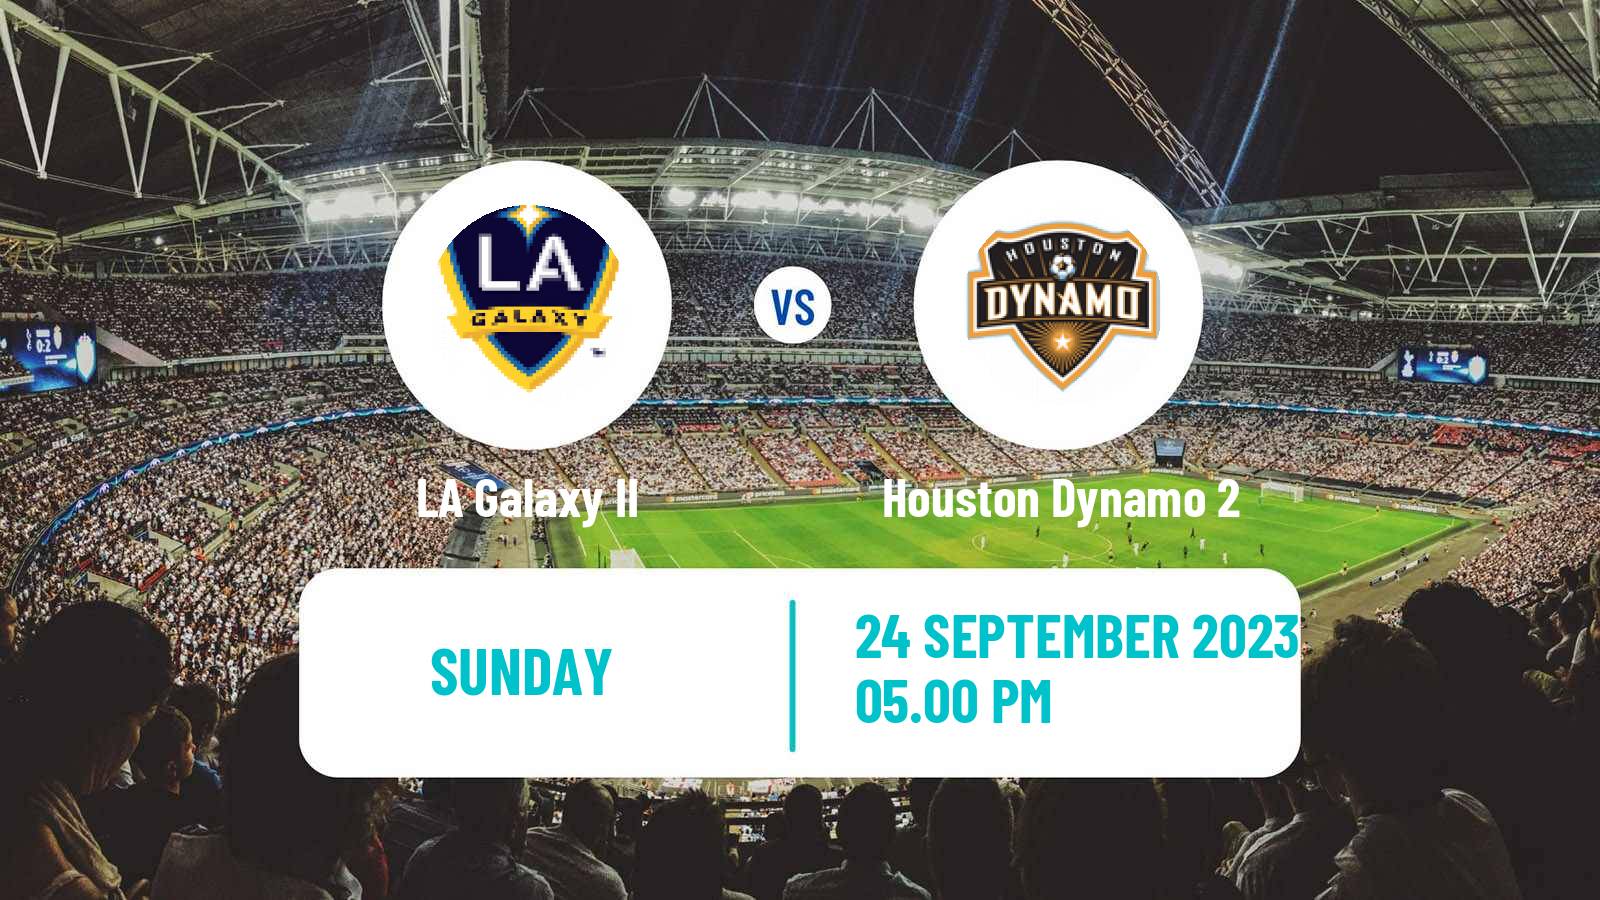 Soccer MLS Next Pro LA Galaxy II - Houston Dynamo 2